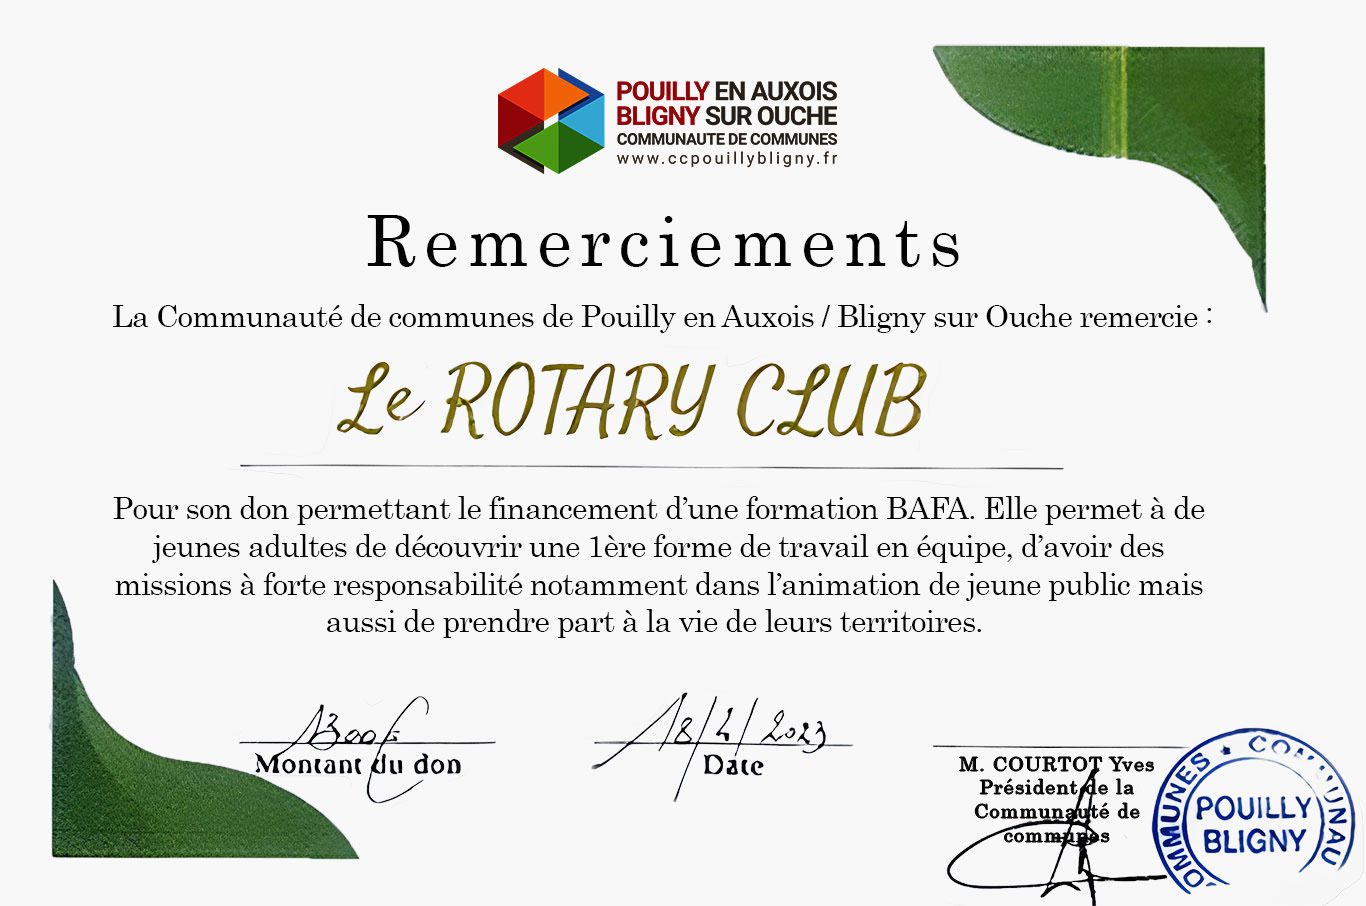 Remerciement au RotaryClub de Pouilly en Auxois pour sa participation financière à l'aide BAFA de la Communauté de communes